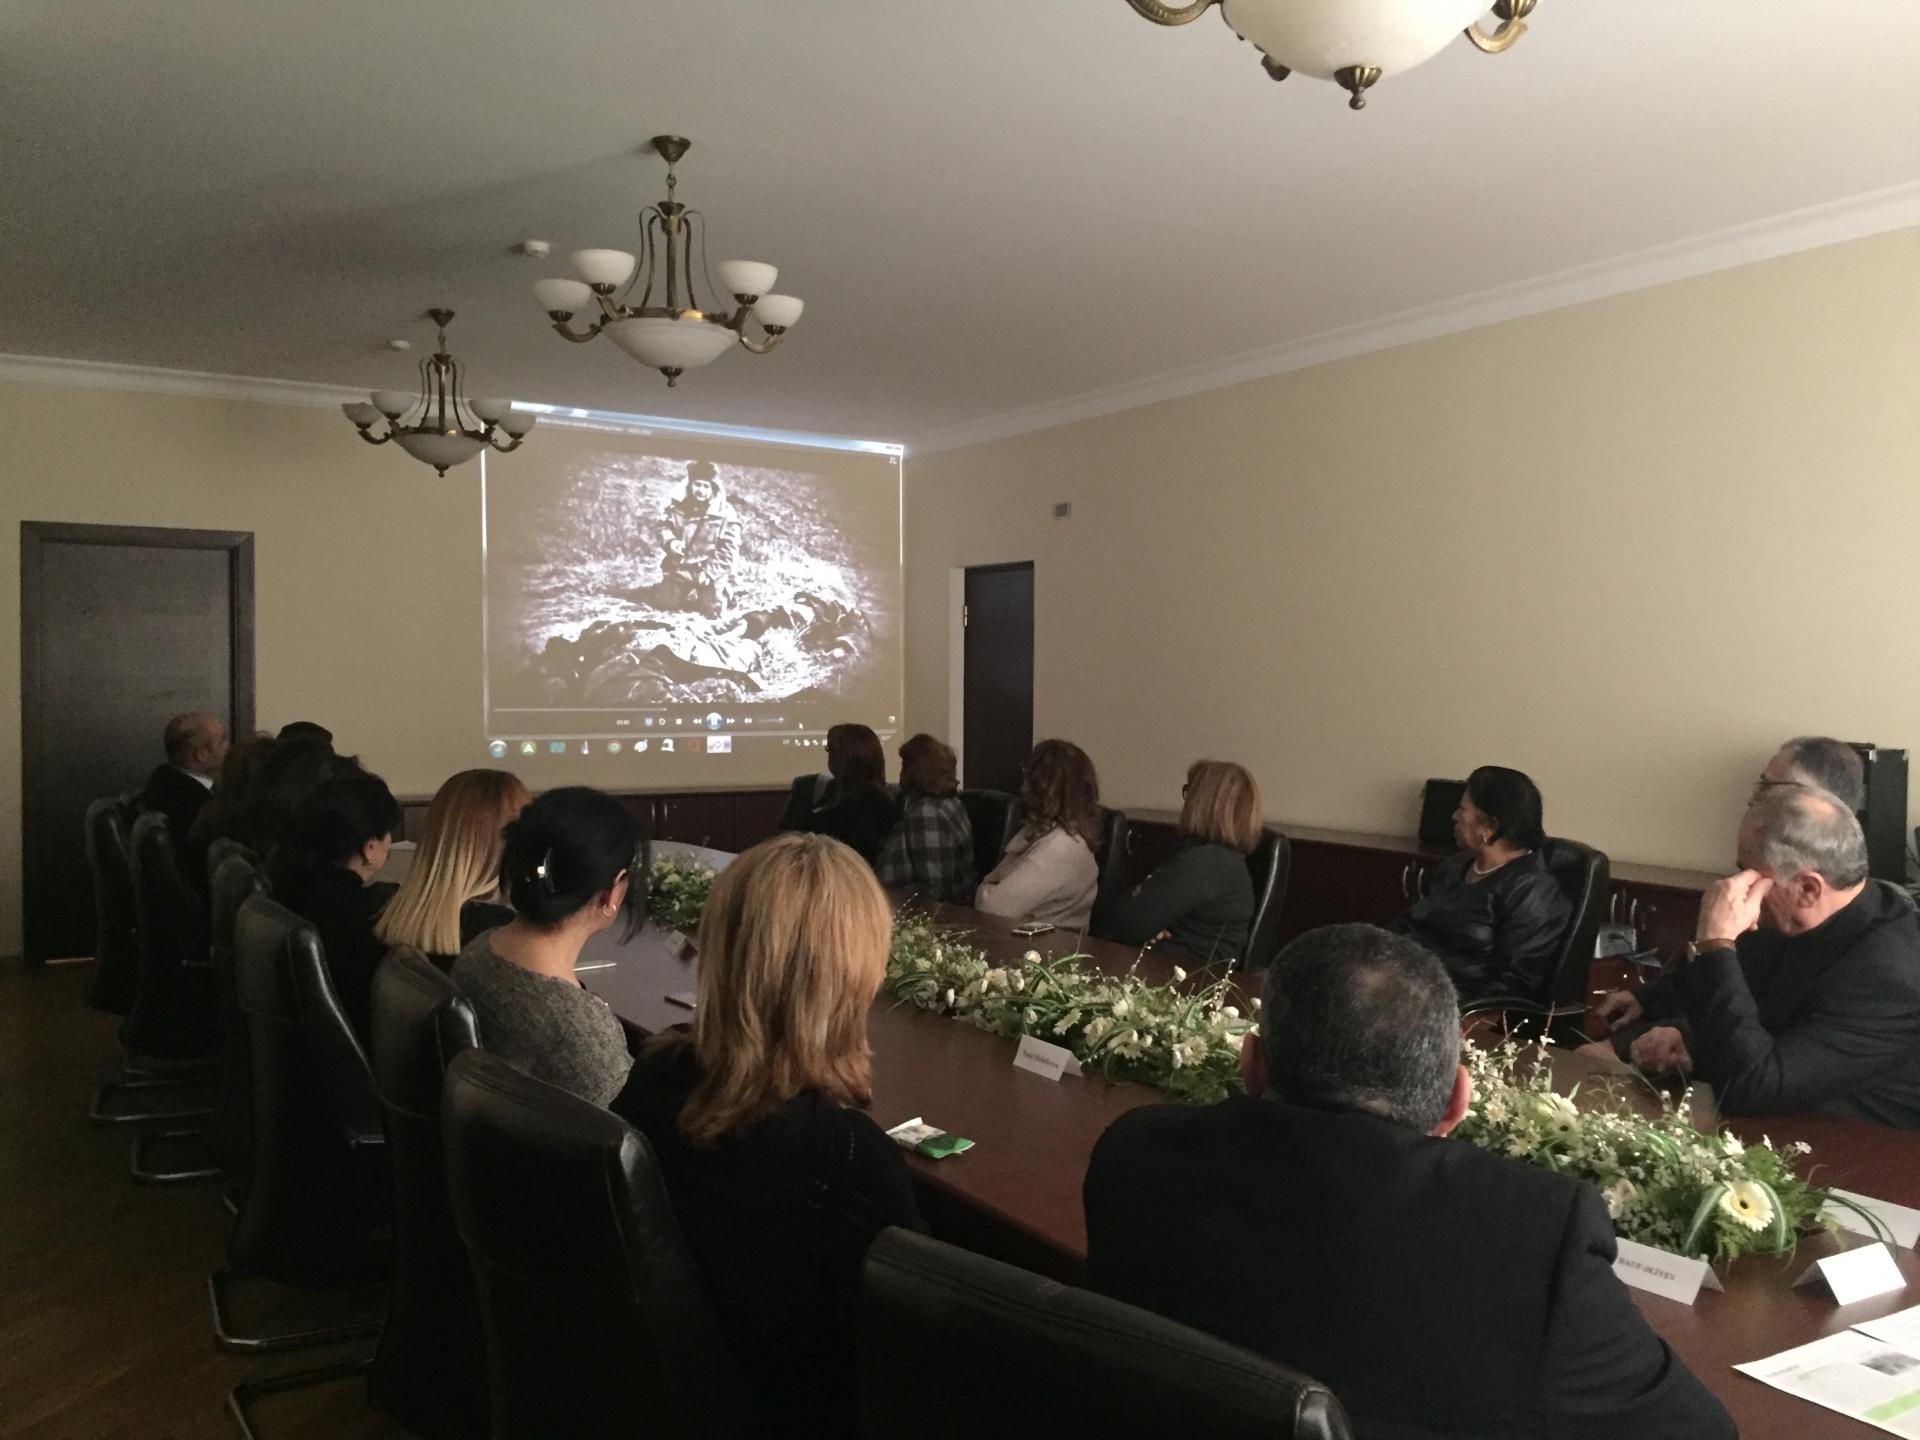 В Хазарском районе Баку отметили 27-ю годовщину Ходжалинского геноцида (ФОТО)